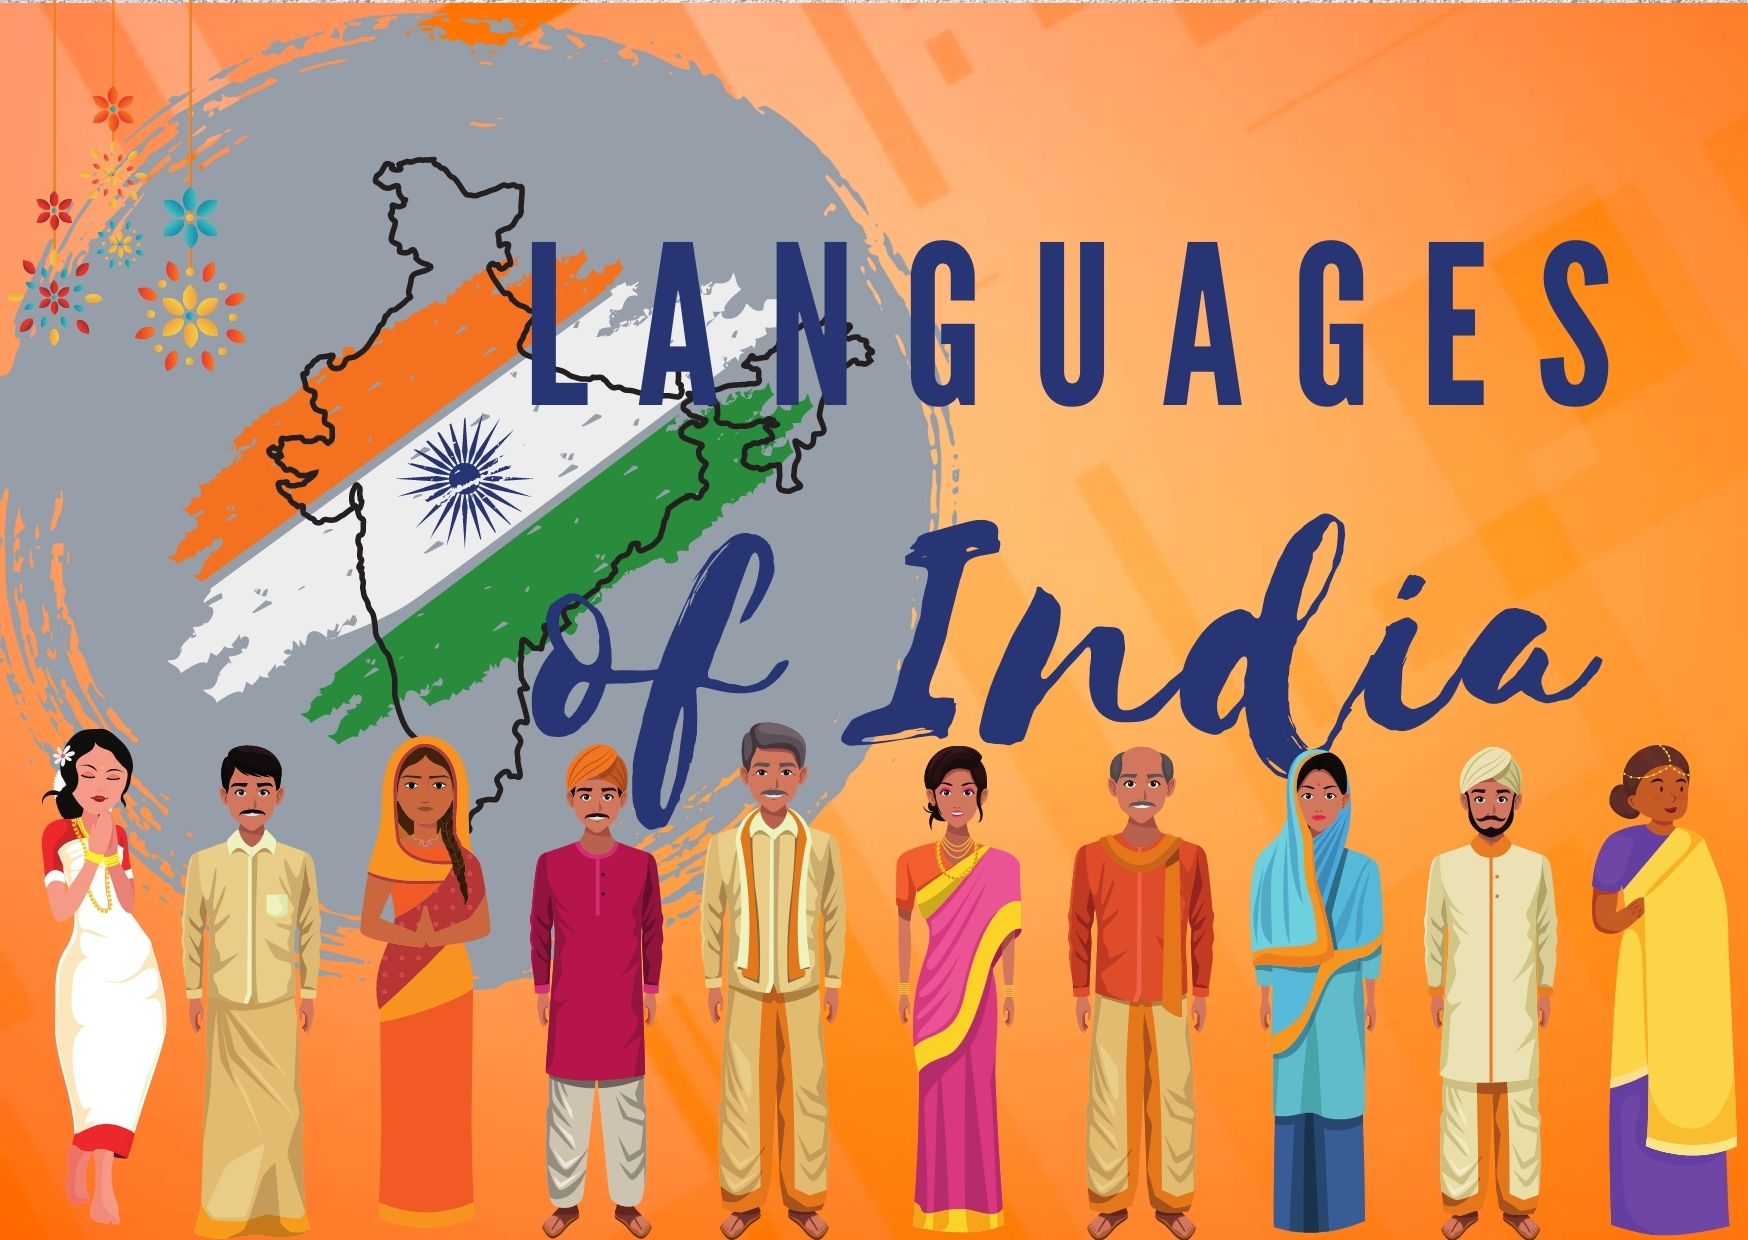 Regional languages of India